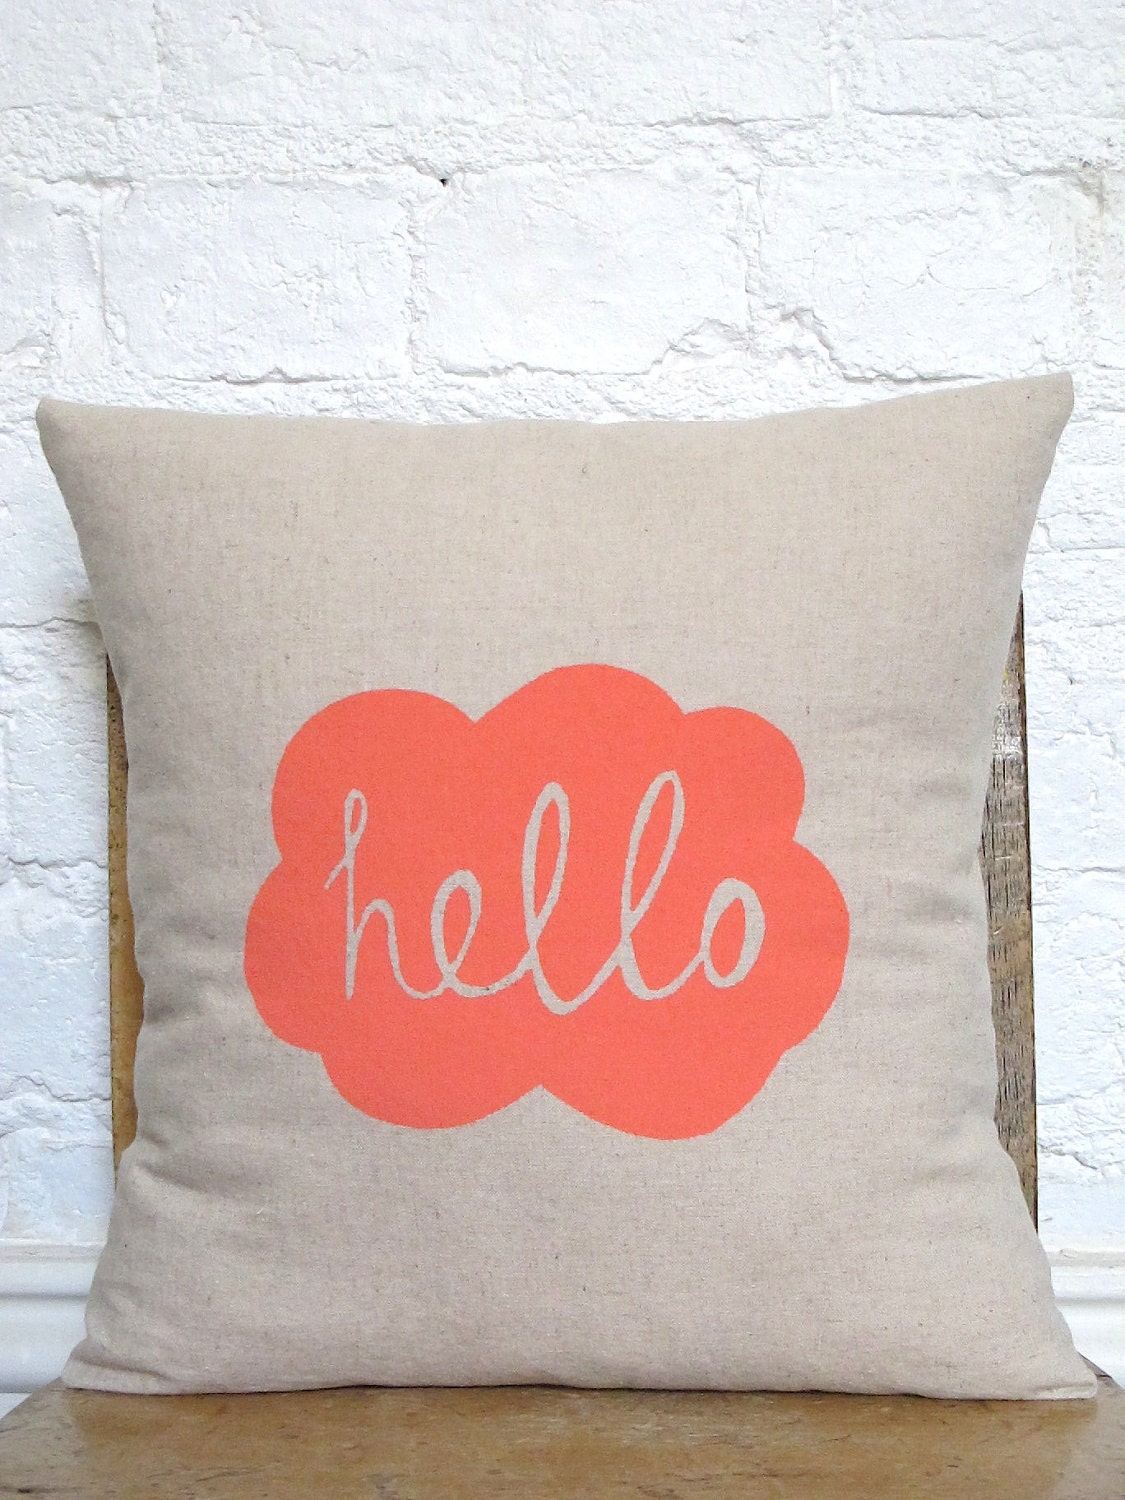 Hand Printed Hello Cushion Cover - Peachy